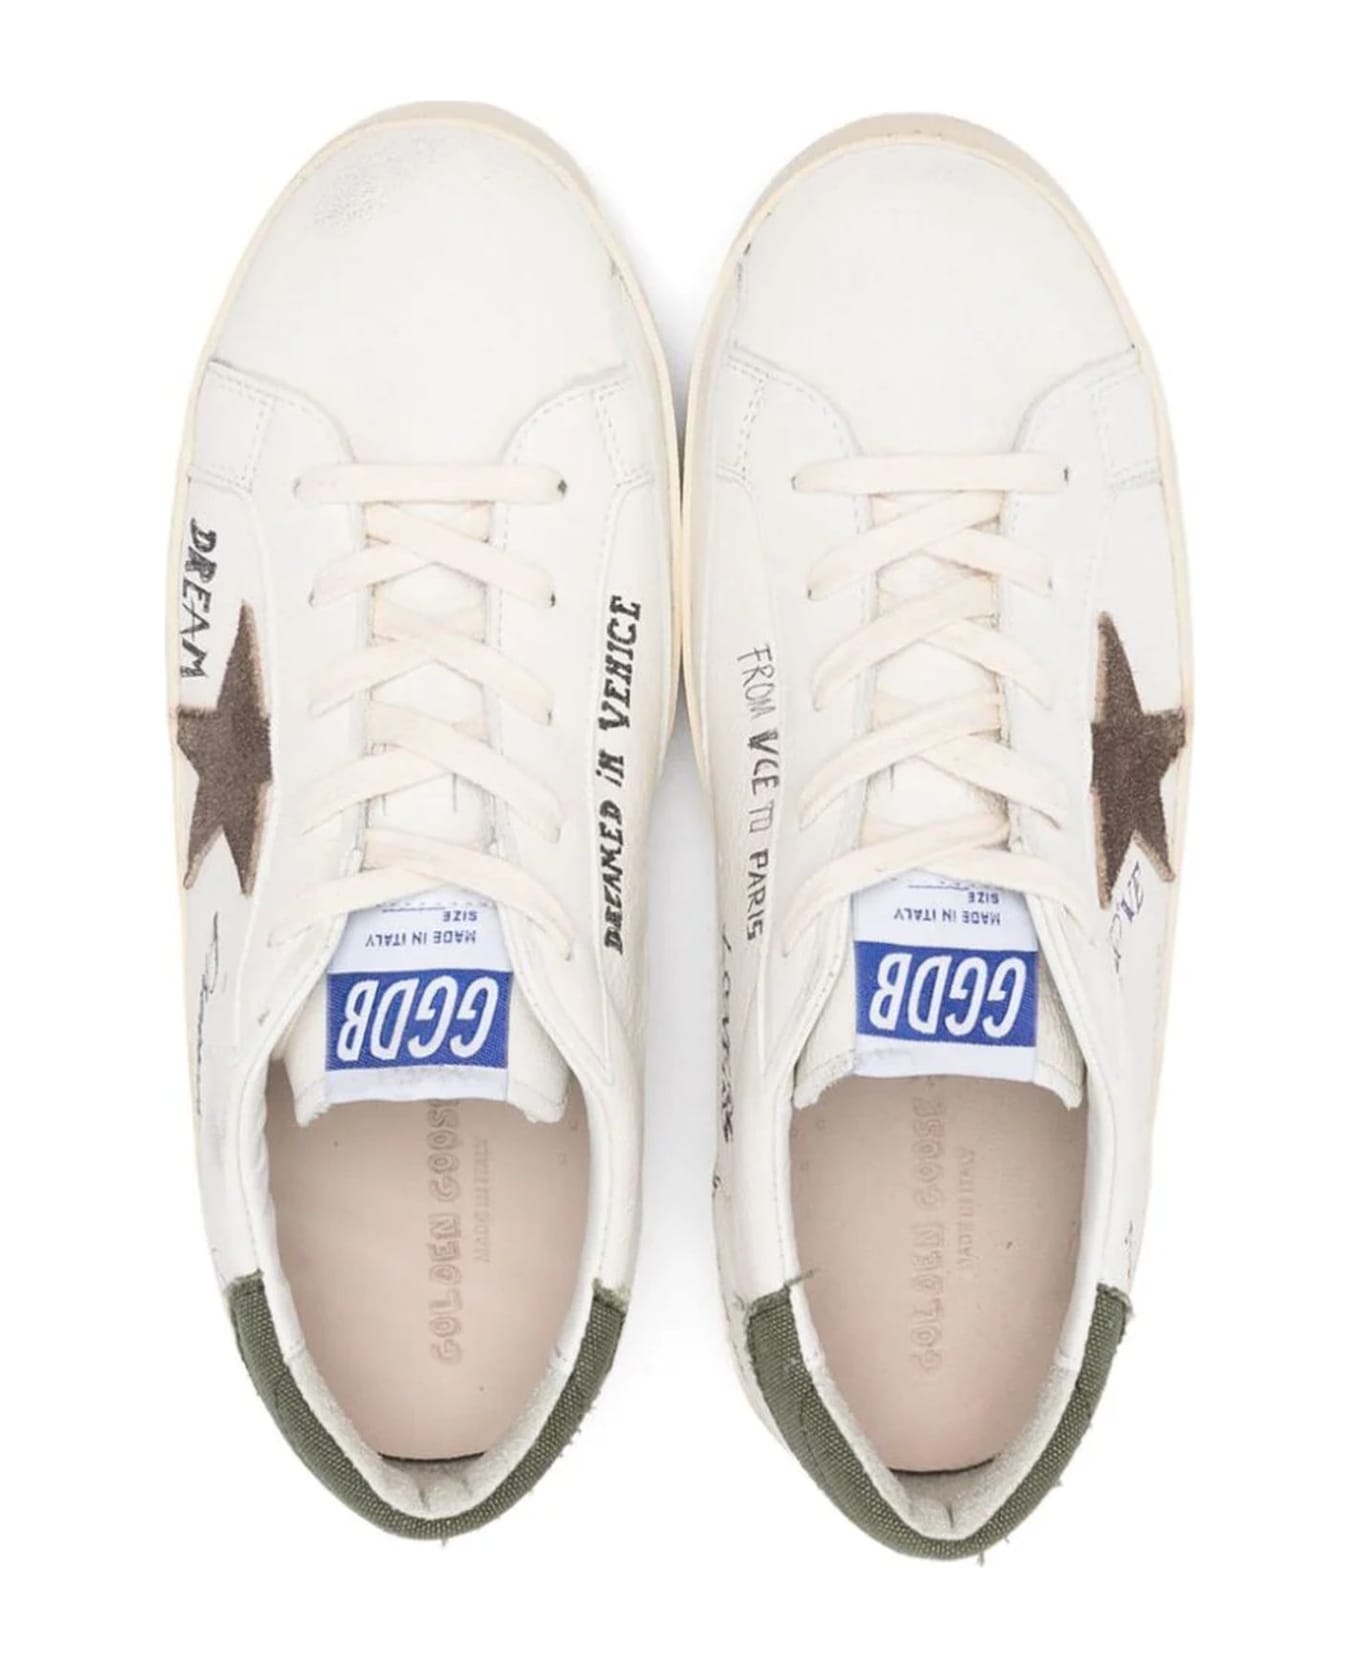 Golden Goose White Leather Sneakers - White /brown /grren シューズ